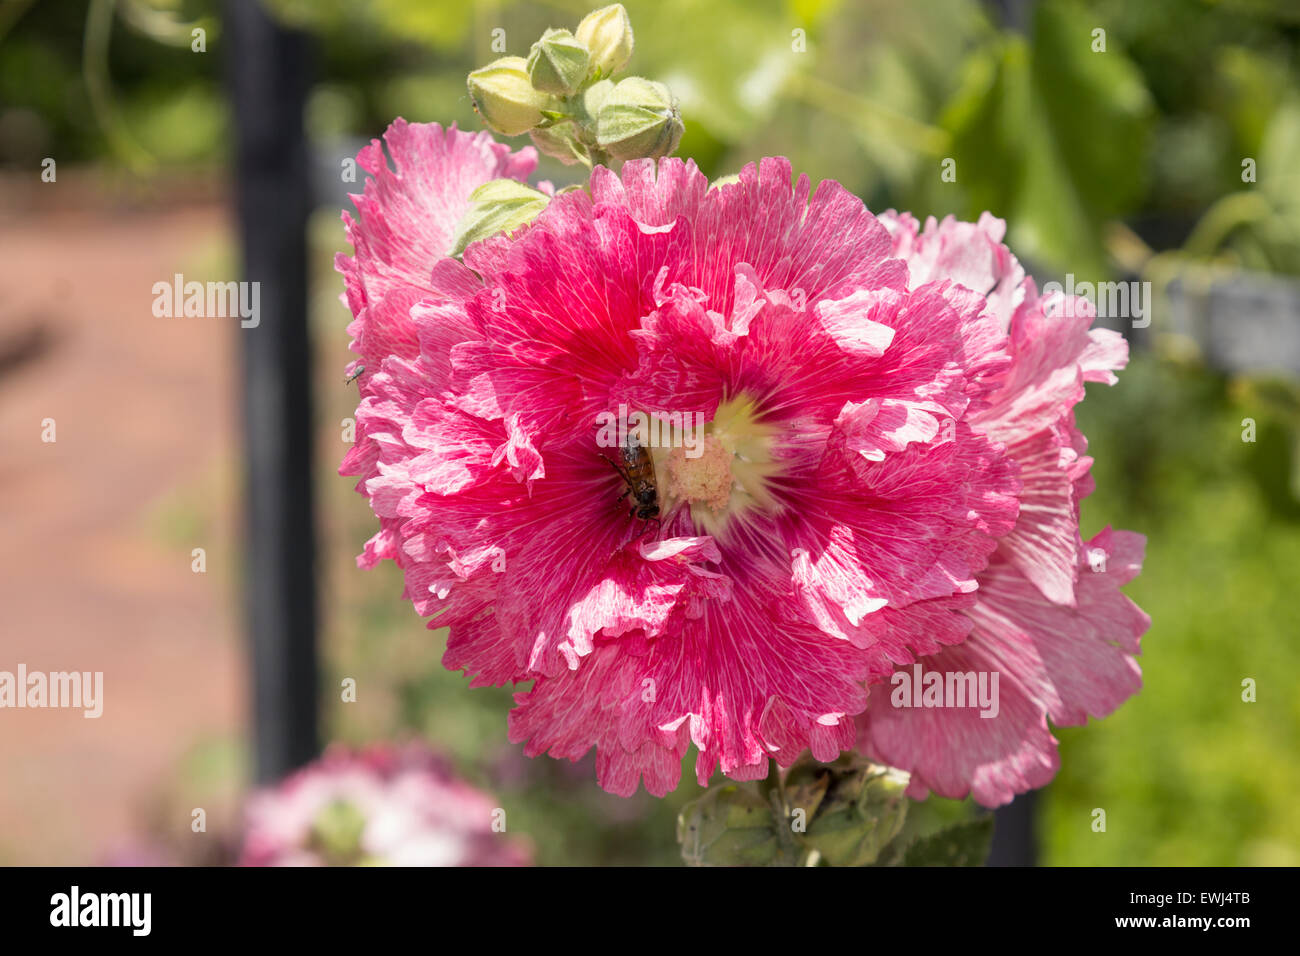 Frilly fiore rosa, paeonia, fiorisce in primavera su un traliccio Foto Stock